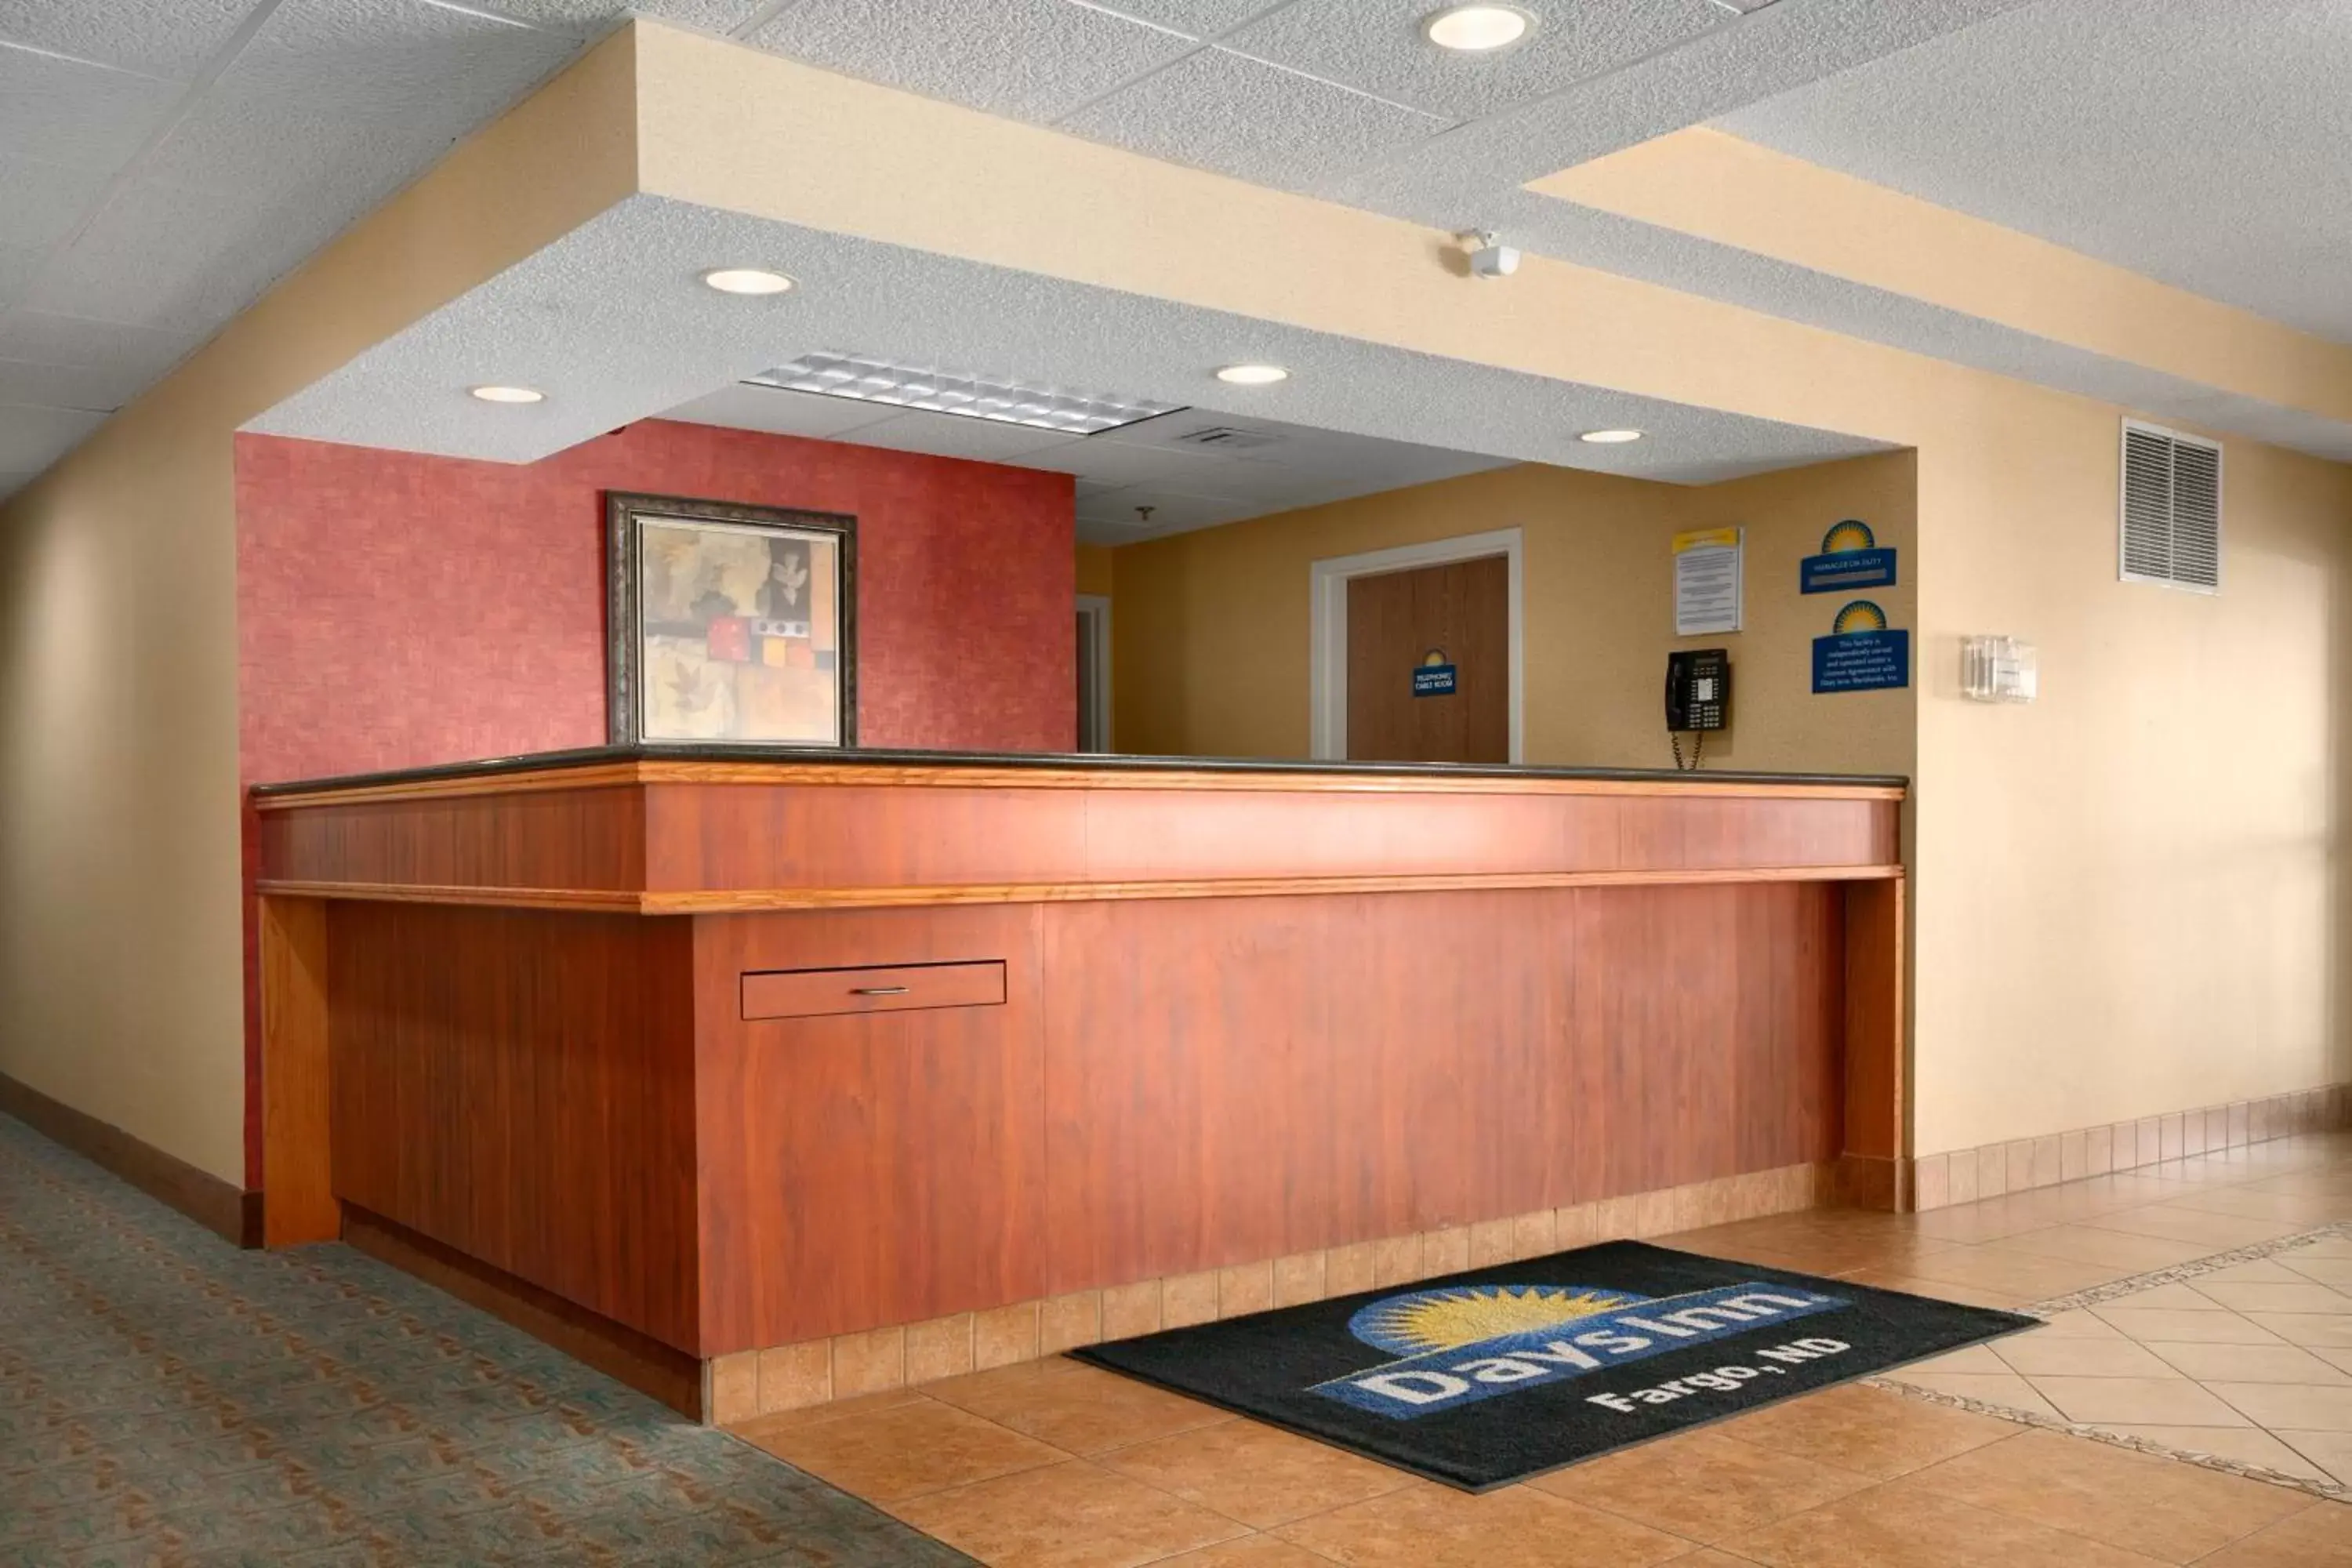 Lobby or reception, Lobby/Reception in Days Inn by Wyndham Fargo